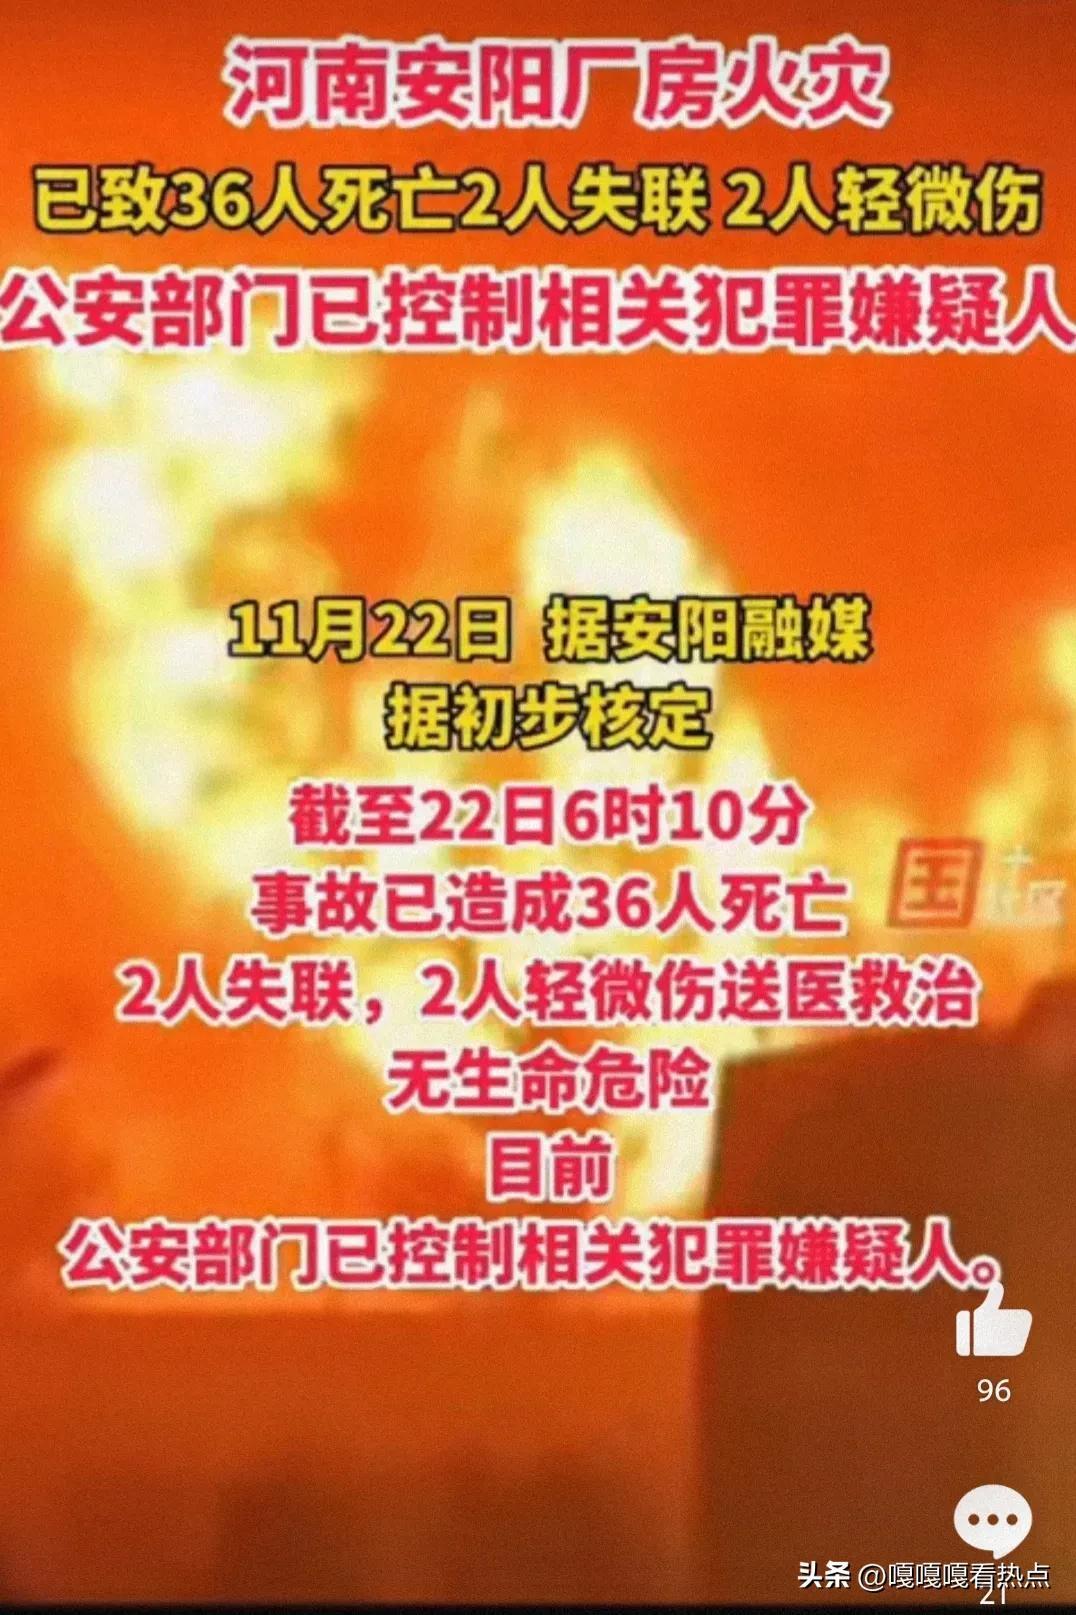 ##安阳厂房火灾犯罪嫌疑人已被控制 热